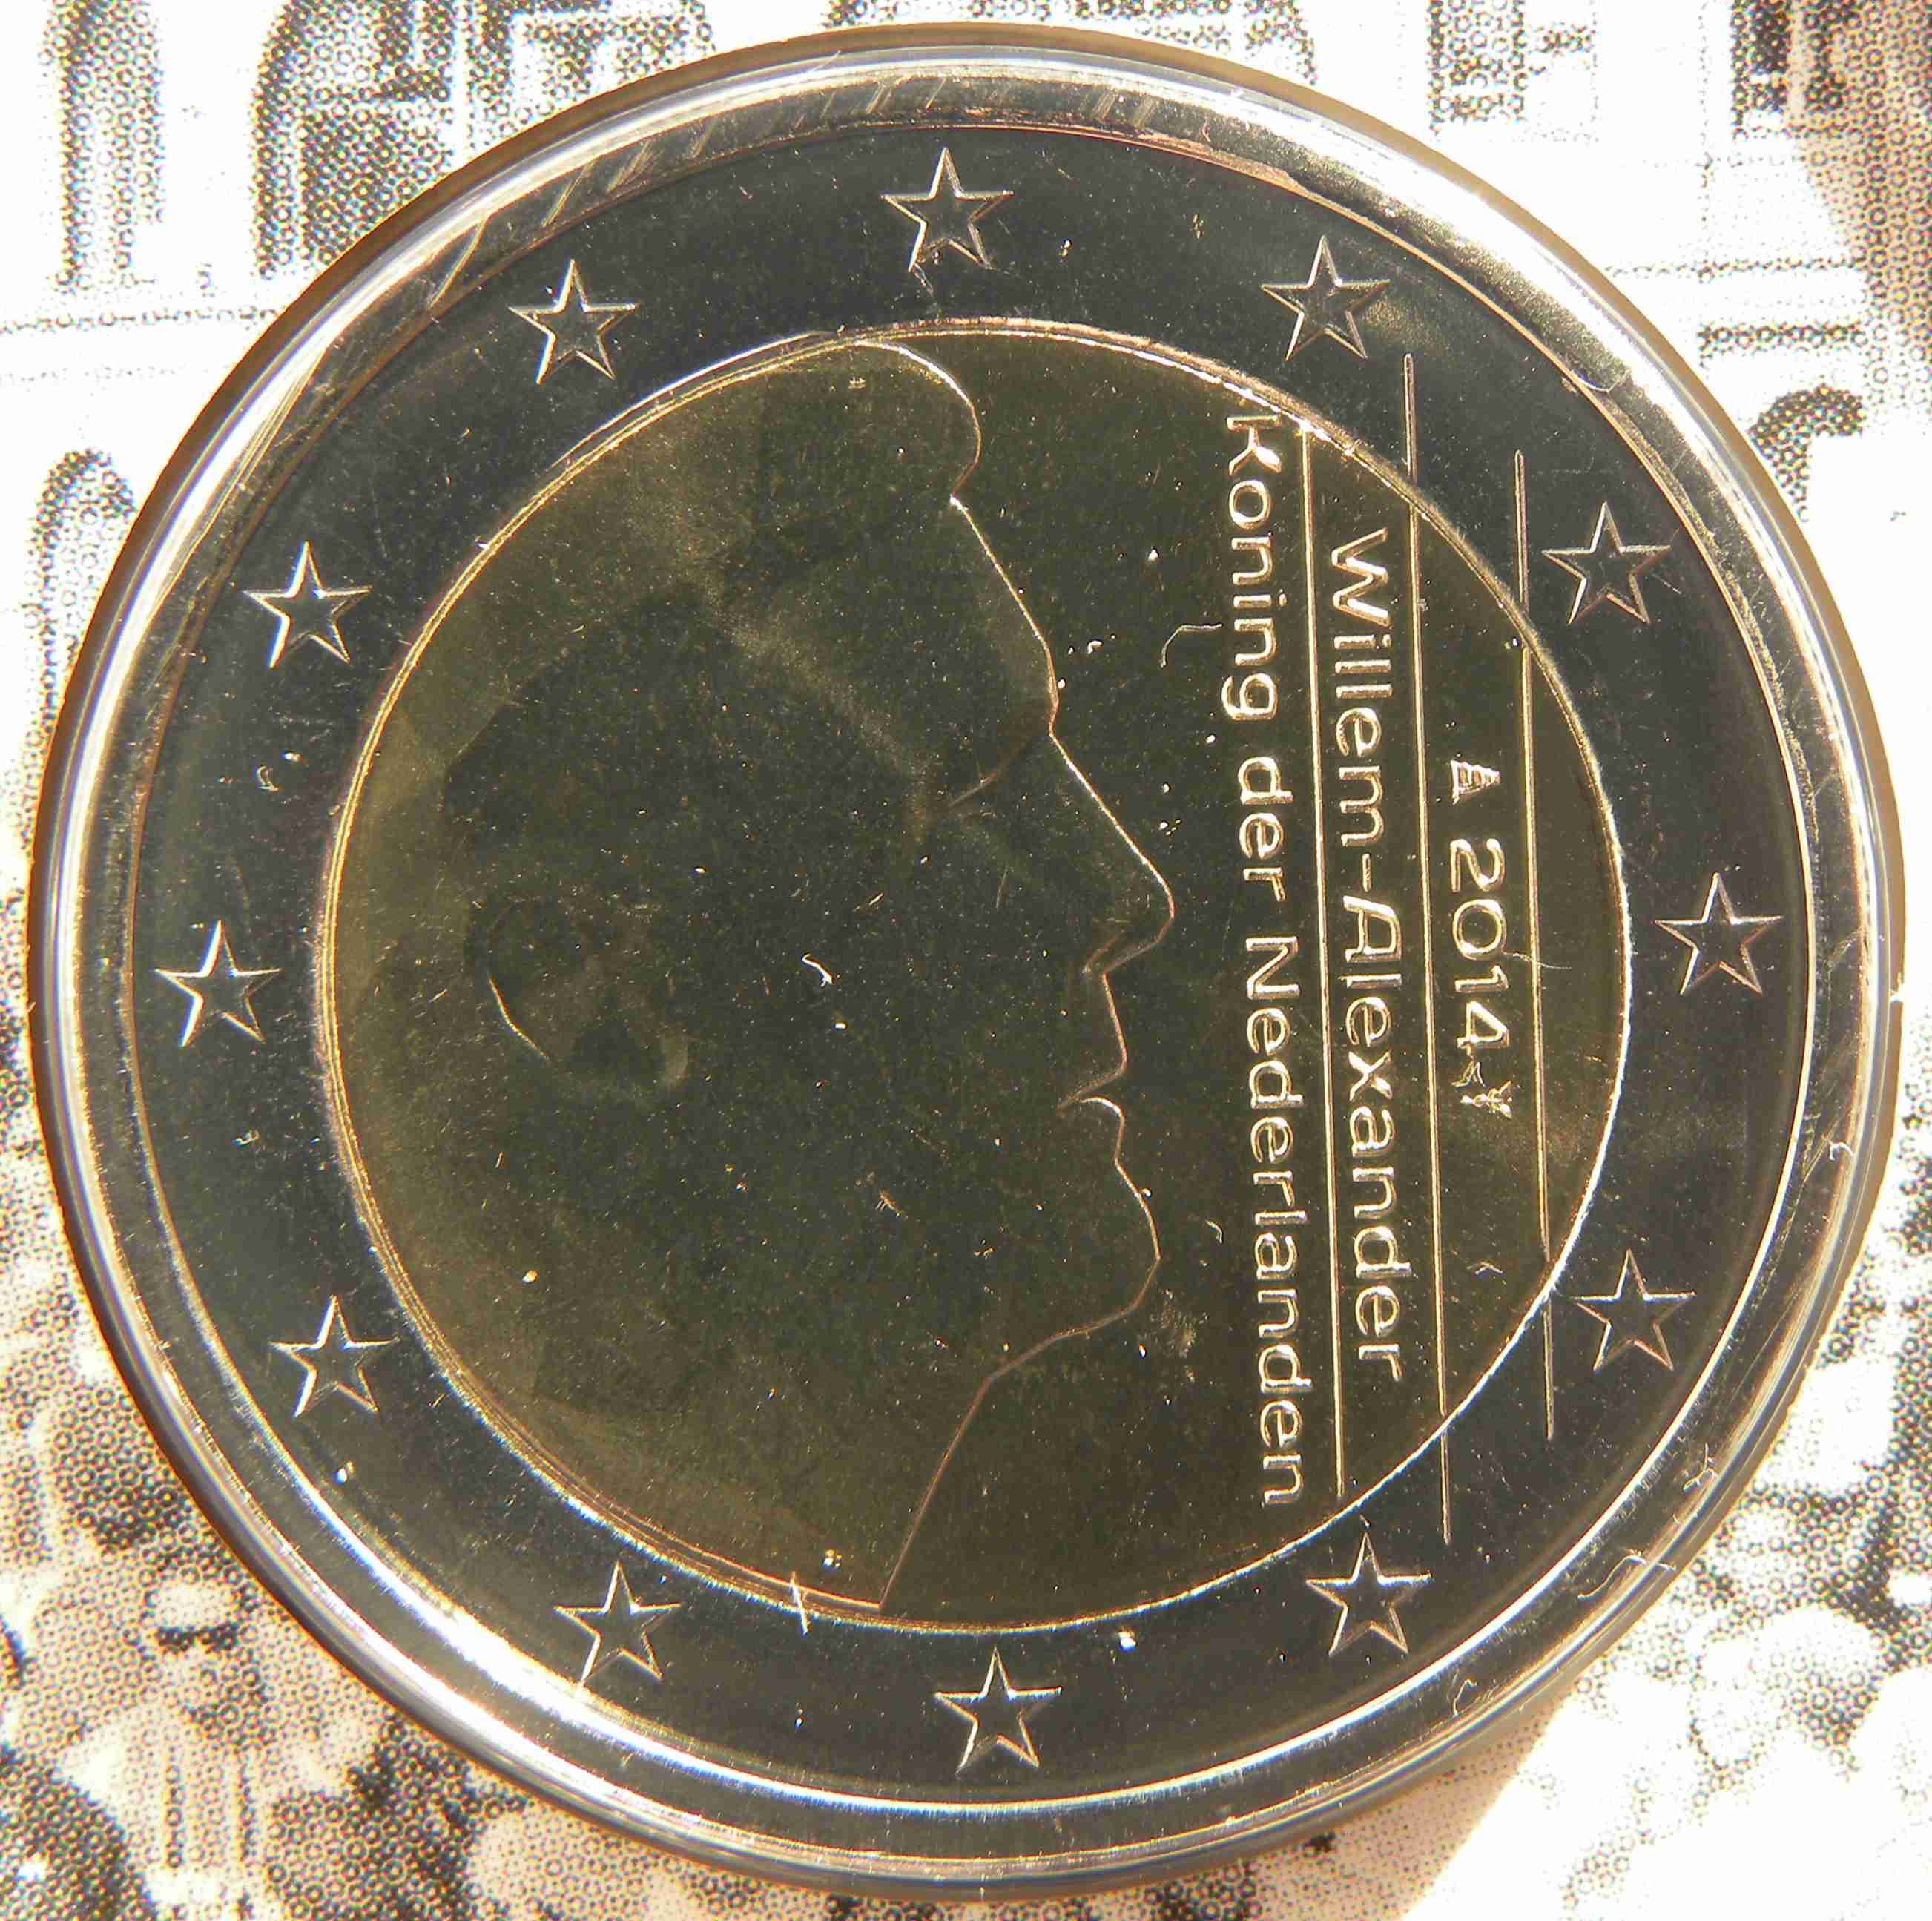 Niederlande 2 Euro Münze 2014 - euro-muenzen.tv - Der Online Euromünzen